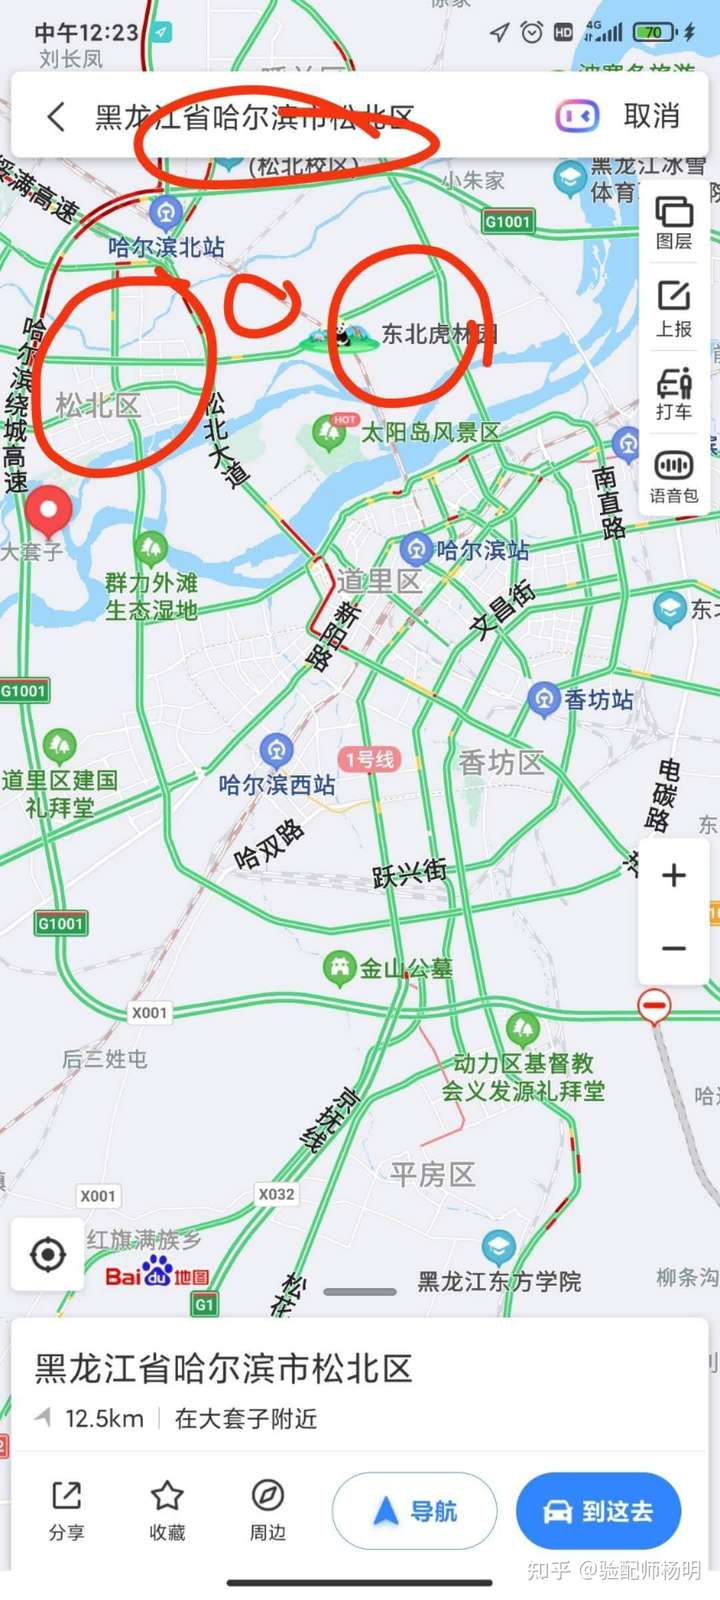 哈尔滨市松北新区地图图片